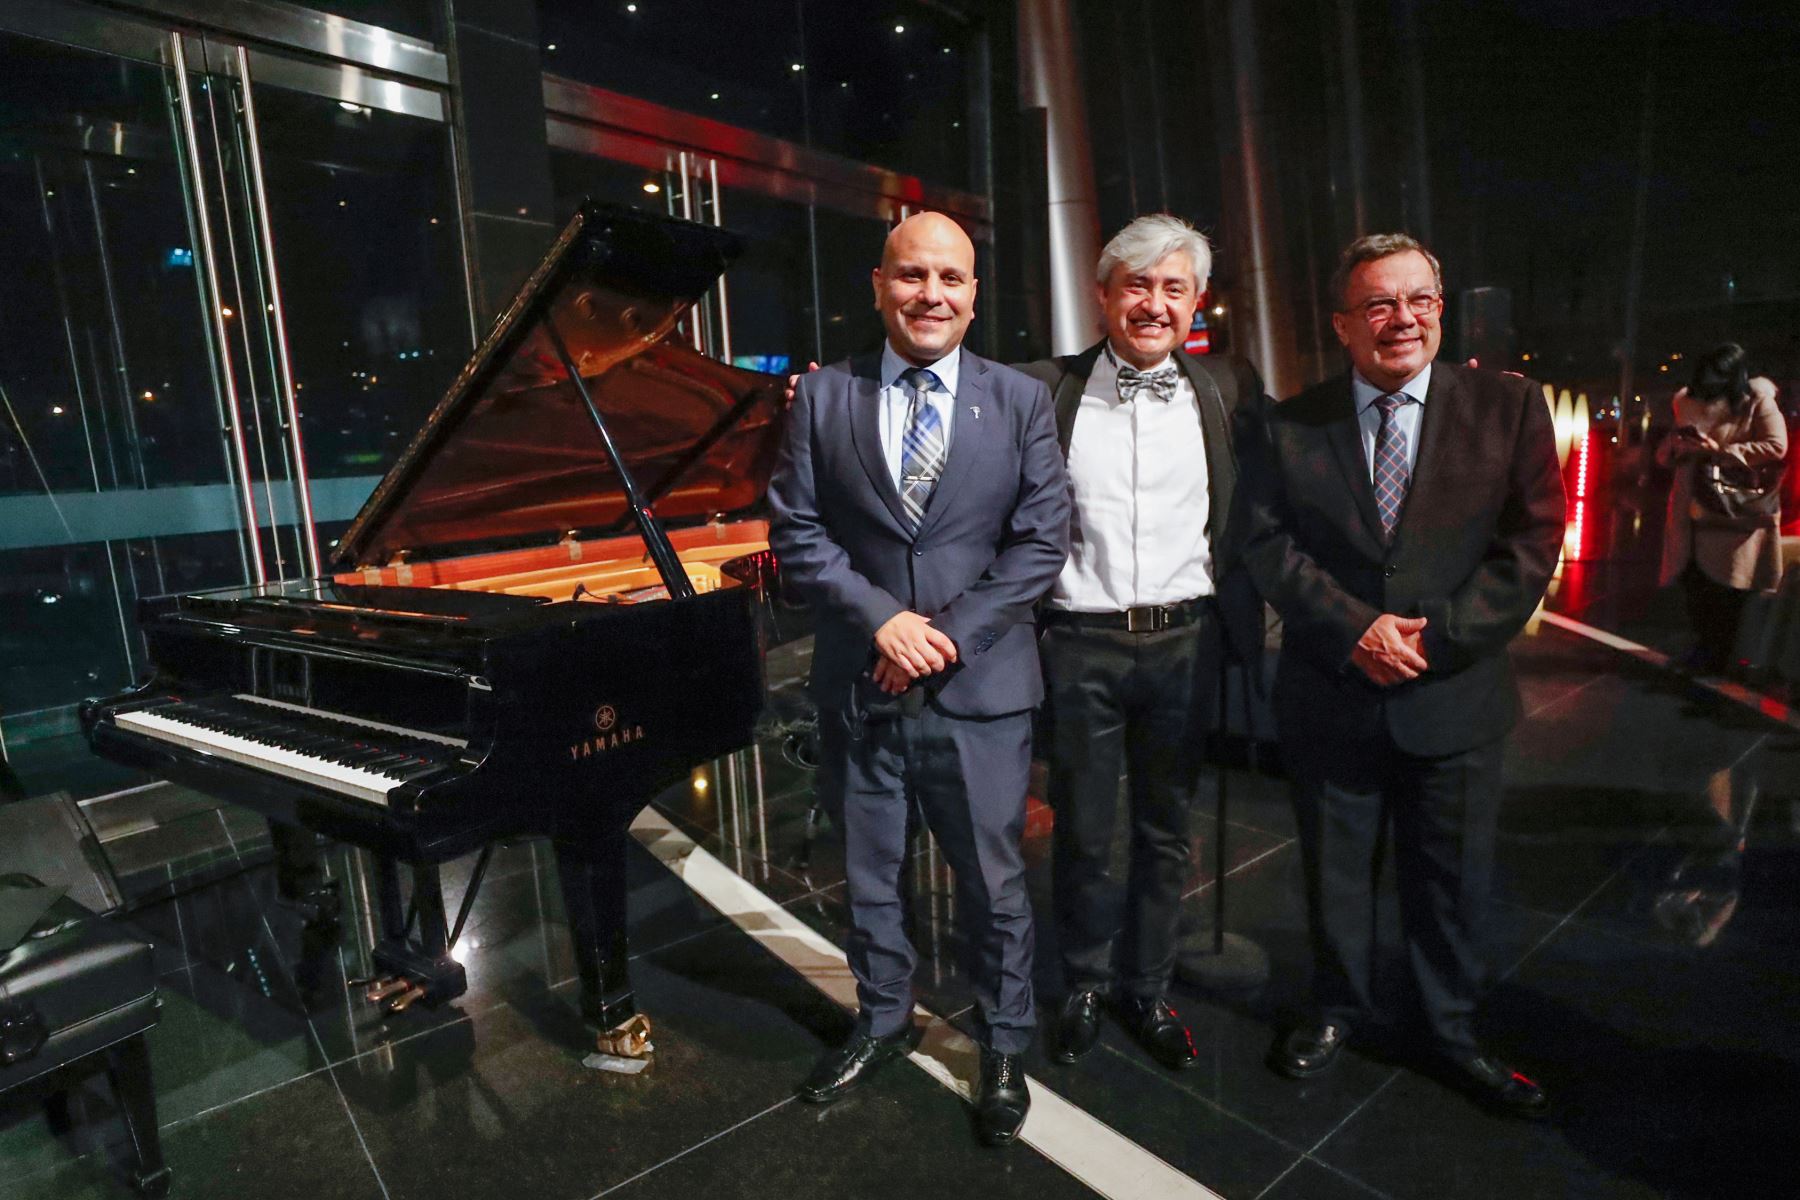 El Ministro de Cultura,Alejandro Salas Zegarra, participó del concierto del reconocido pianista y compositor ecutoriano, Juan Castro, que se llevó a cabo en el Gran Teatro Nacional.
Foto: ANDINA/Mincul